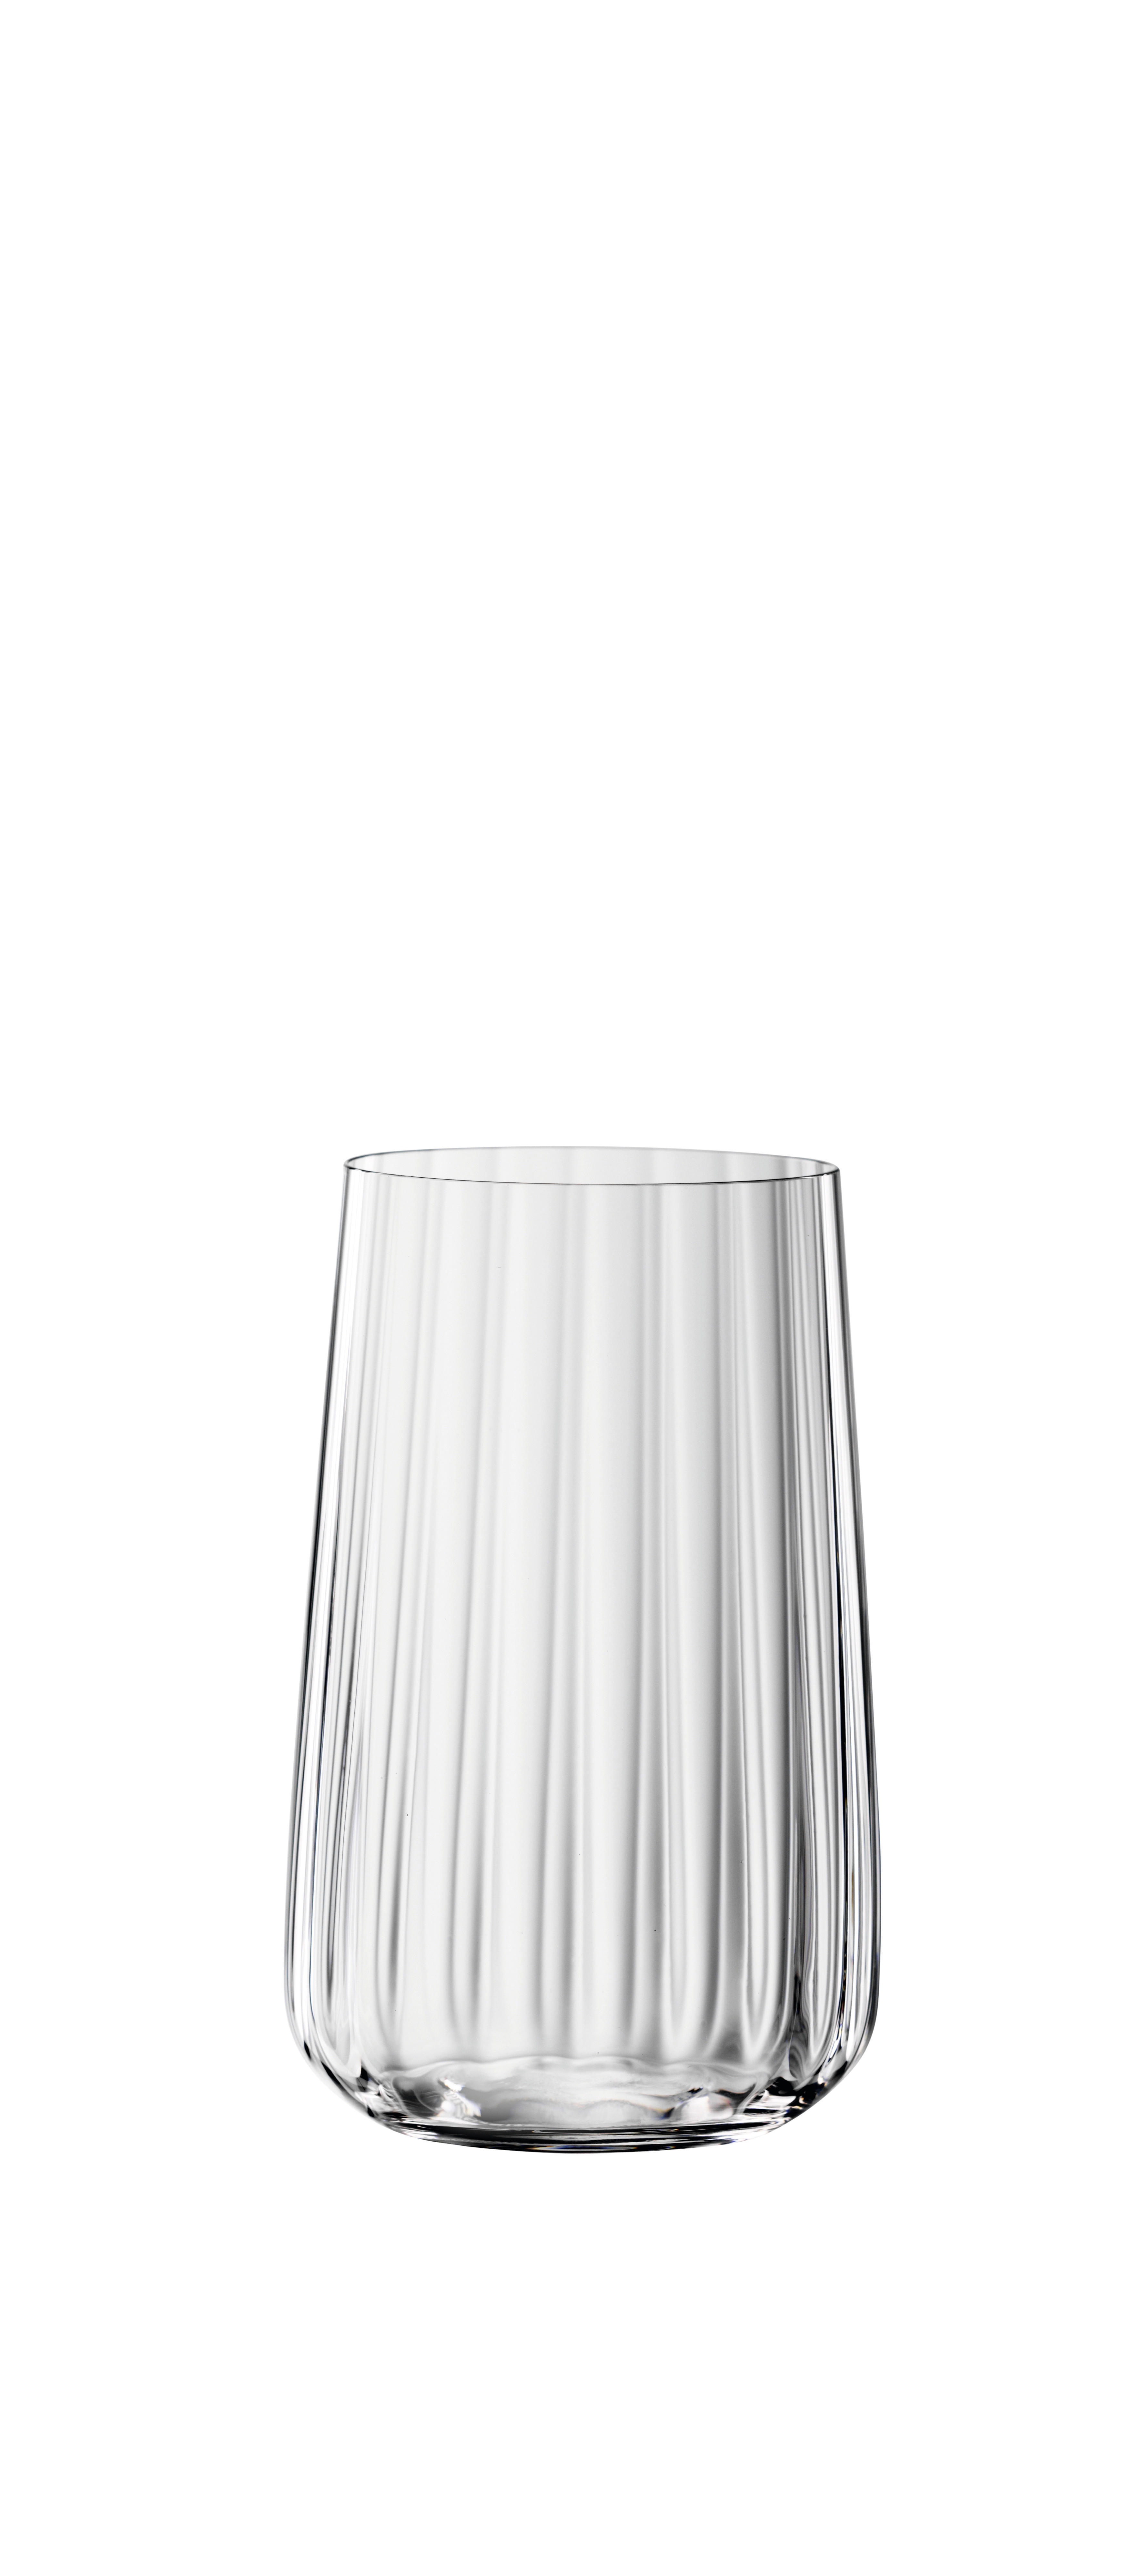 GLÄSERSET Lifestyle  4-teilig  - Trend, Glas (17,4/14/17,4cm) - Spiegelau